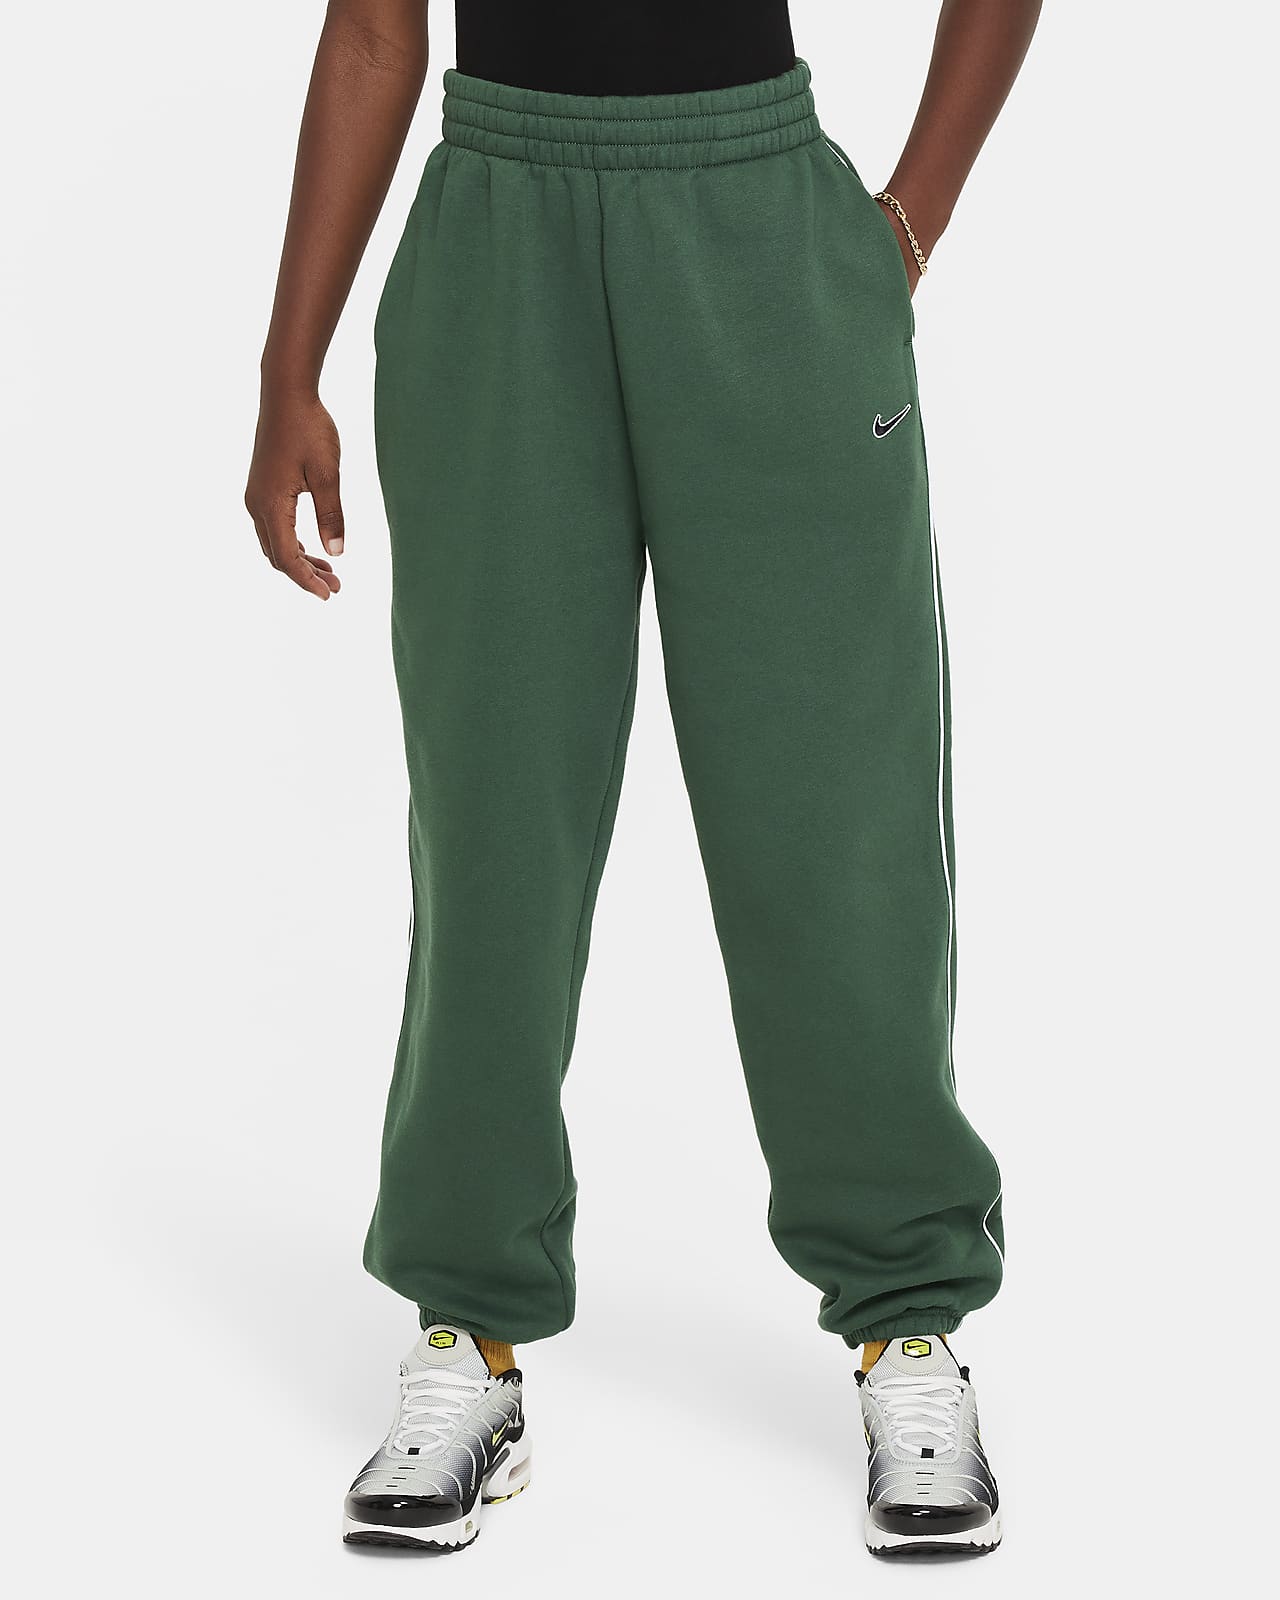 Nike Sportswear Pantalons oversized de teixit Fleece - Nena